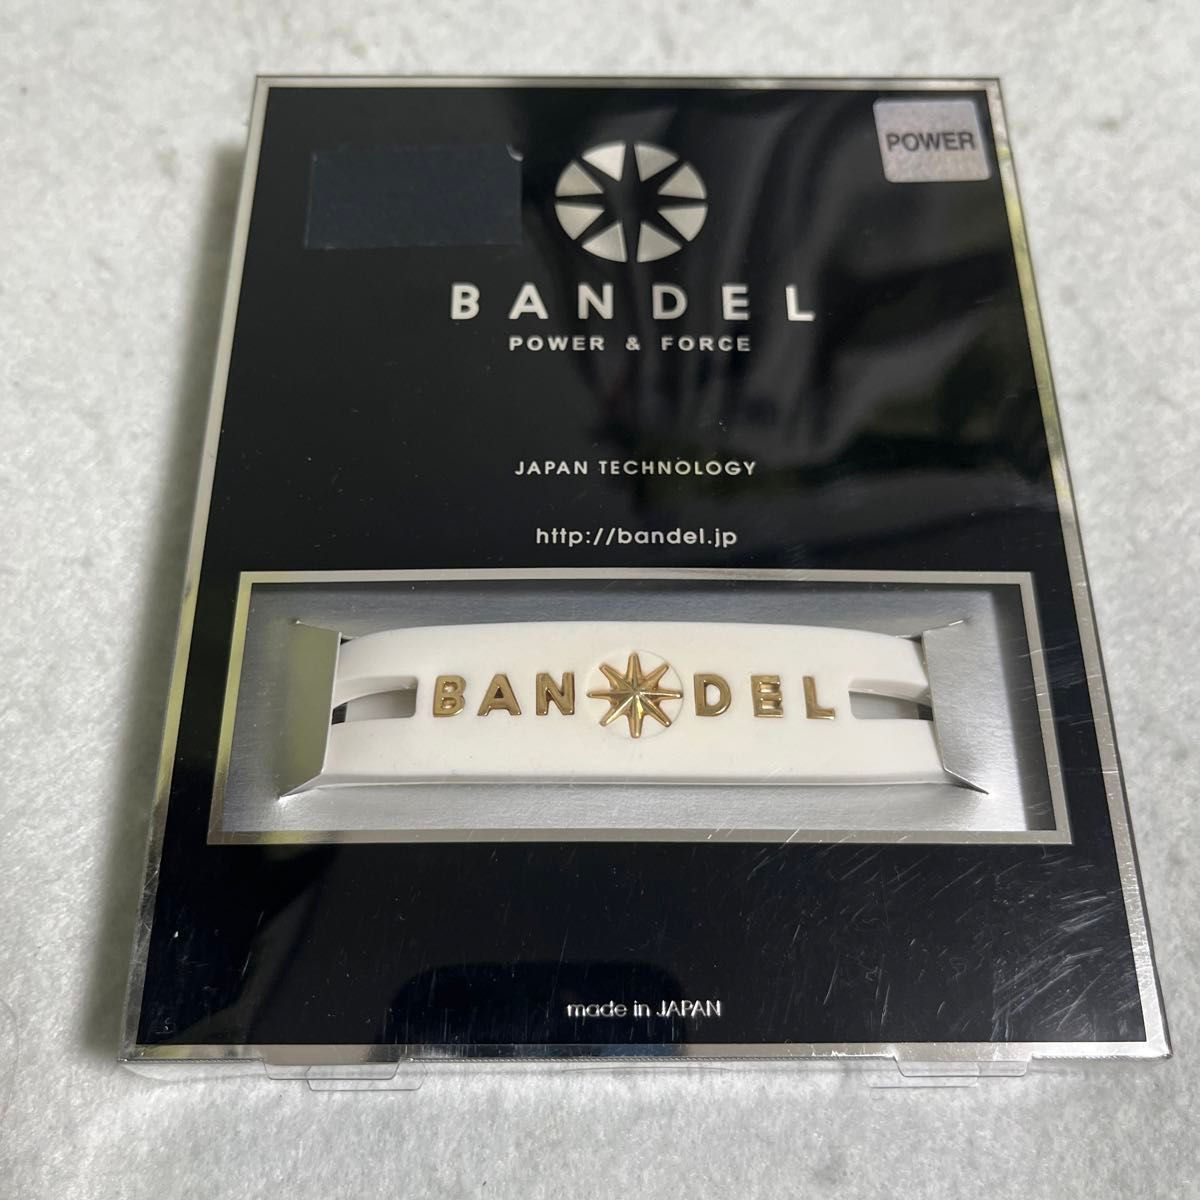 【正規品】BANDEL メタルブレスレットwhite×goldサイズL 19.0cm